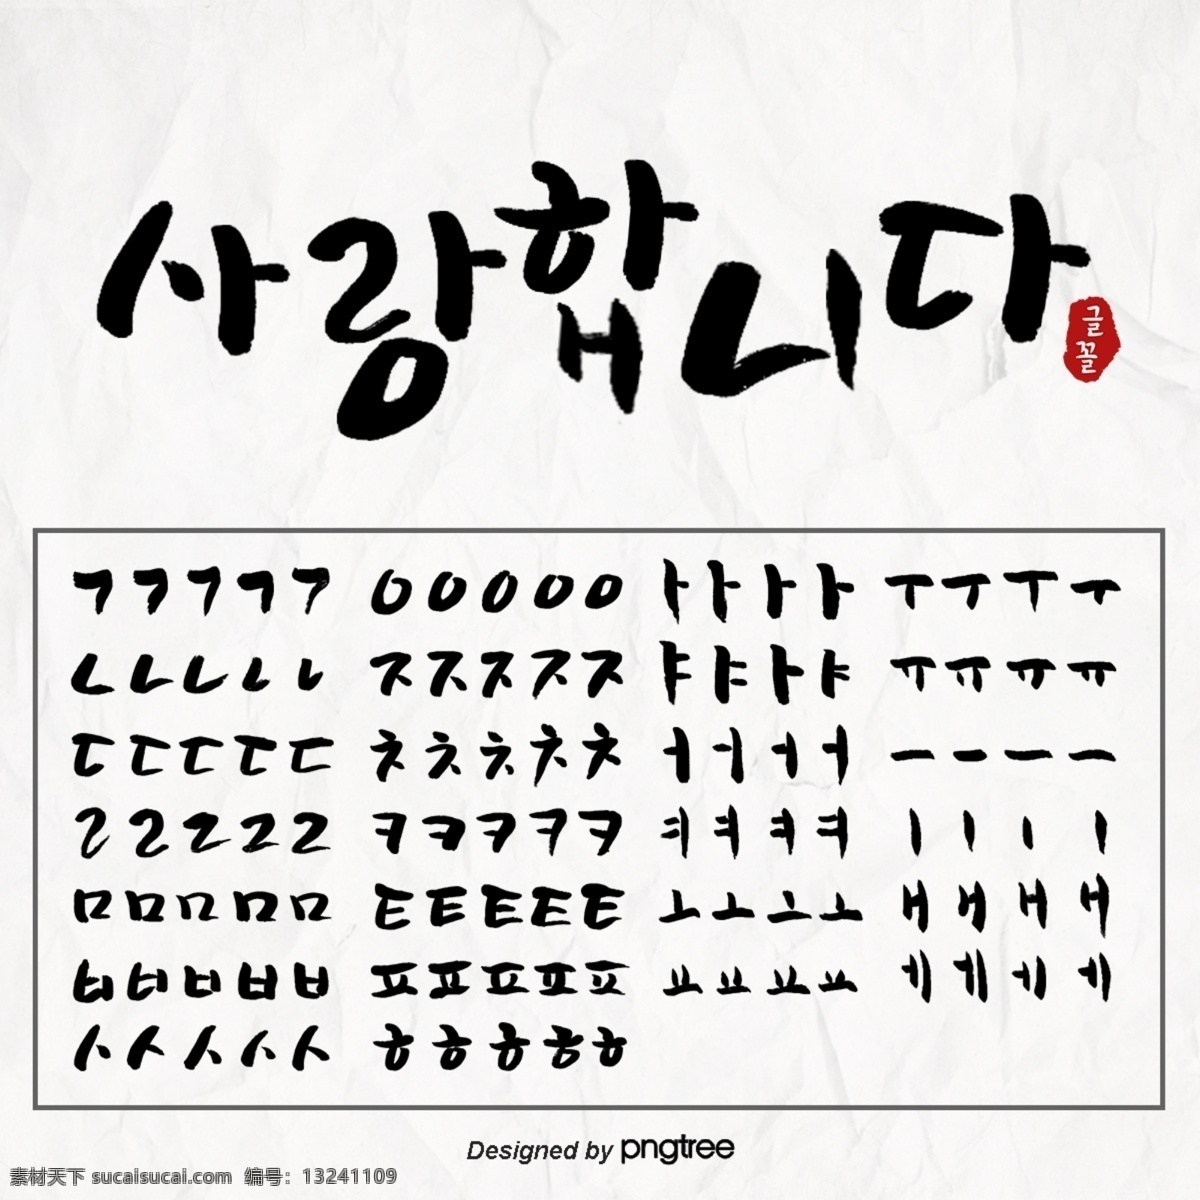 黑色 手印 音量 韩文 书法 笔画 书法分解 n 字体字体 字体 笔画分解 韩文字体 韩文笔画